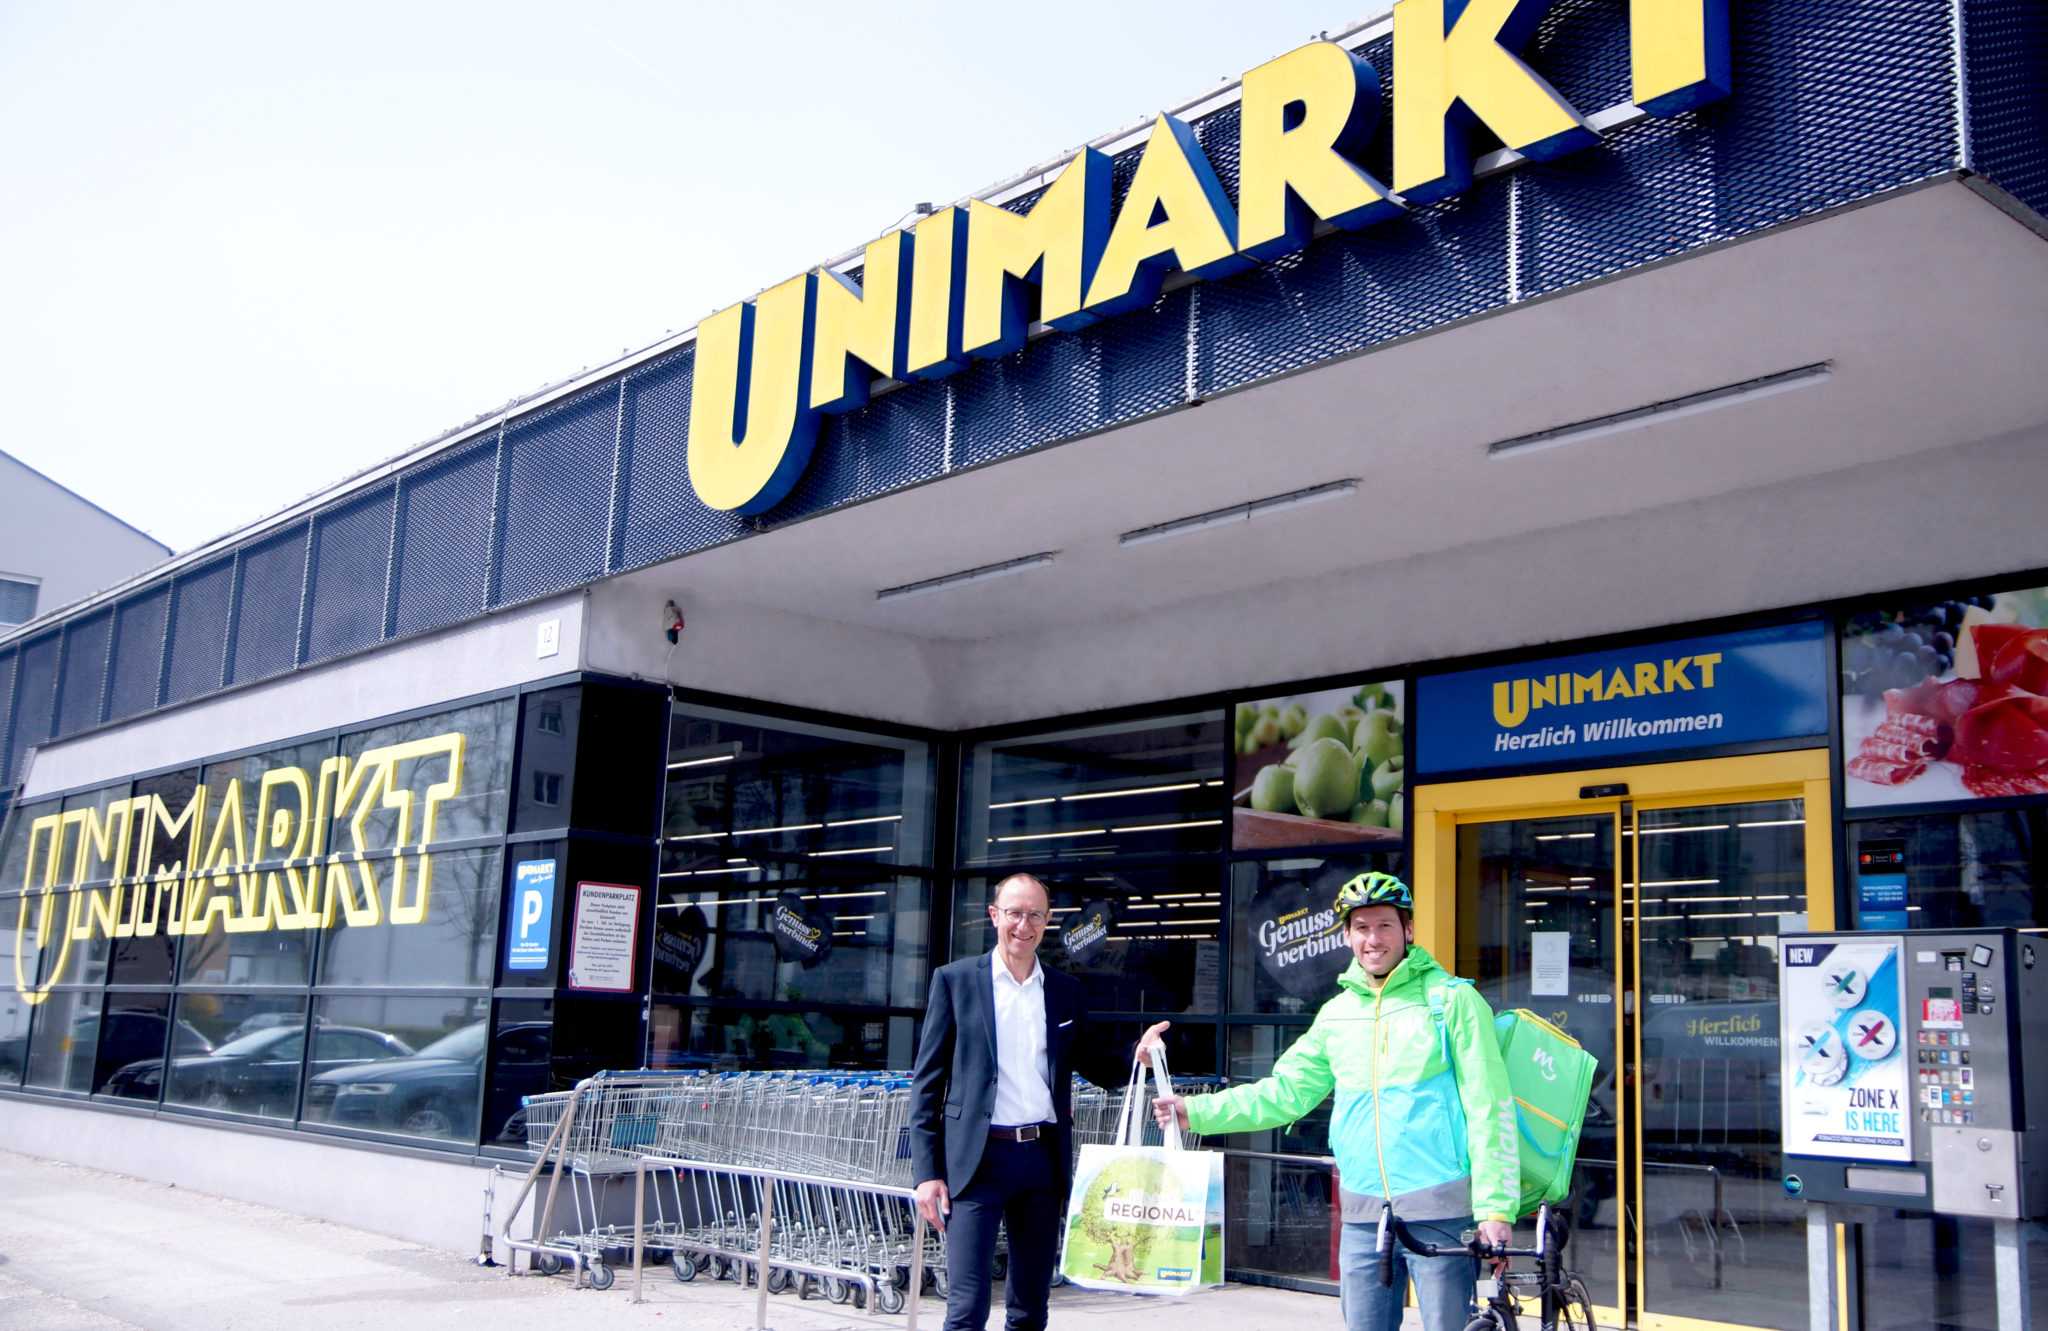 mjam kooperiert mit Unimarkt und erweitert Lieferangebot in Linz